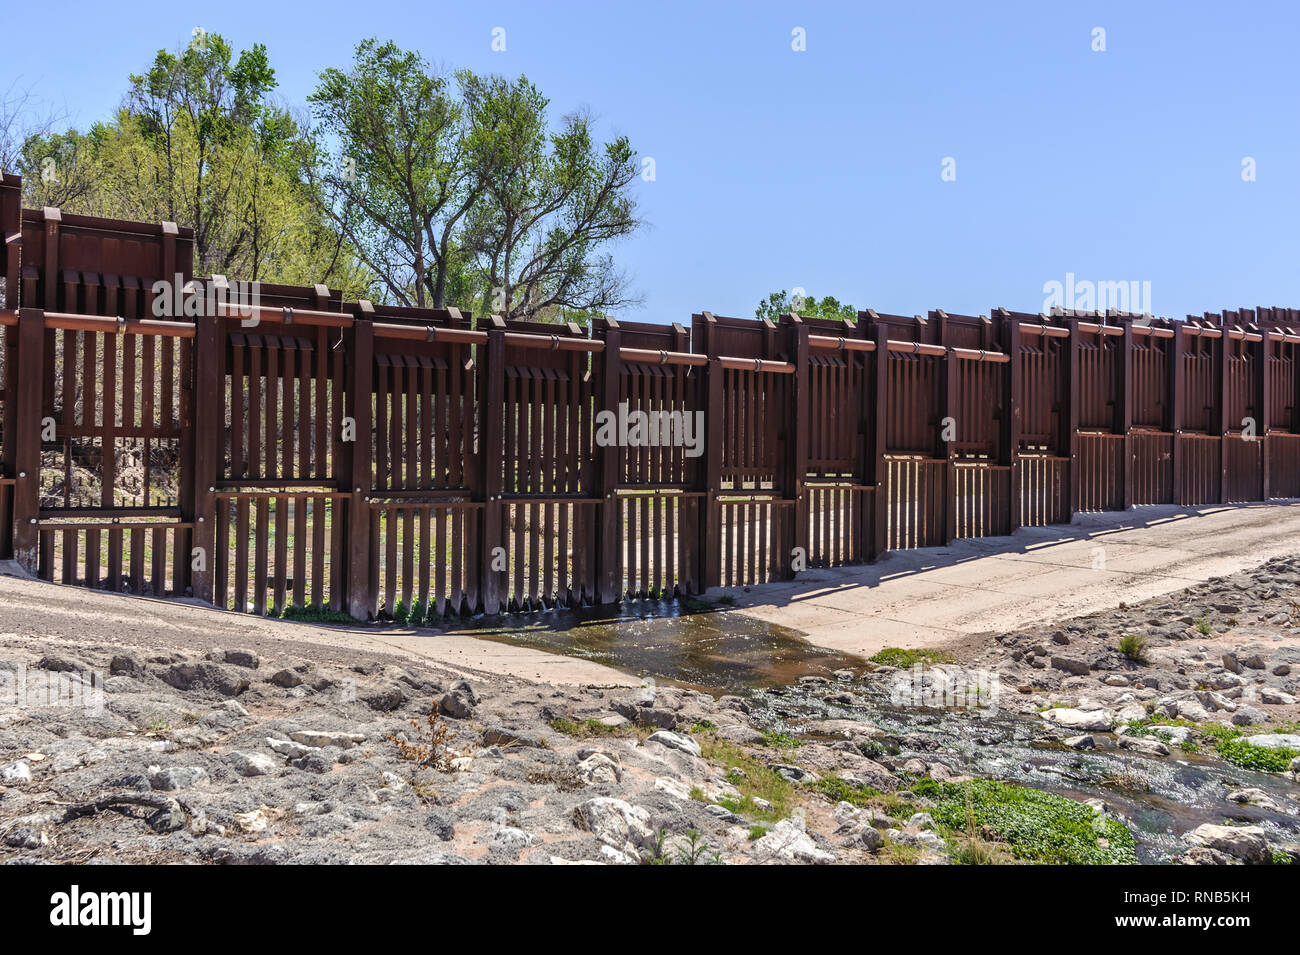 Frontière barrière sur la frontière du Mexique, de type barrière piétonne bollard, design spécial pour permettre l'écoulement de l'eau, côté US, à l'Est de l'Arizona Nogales, Avril 2018 Banque D'Images